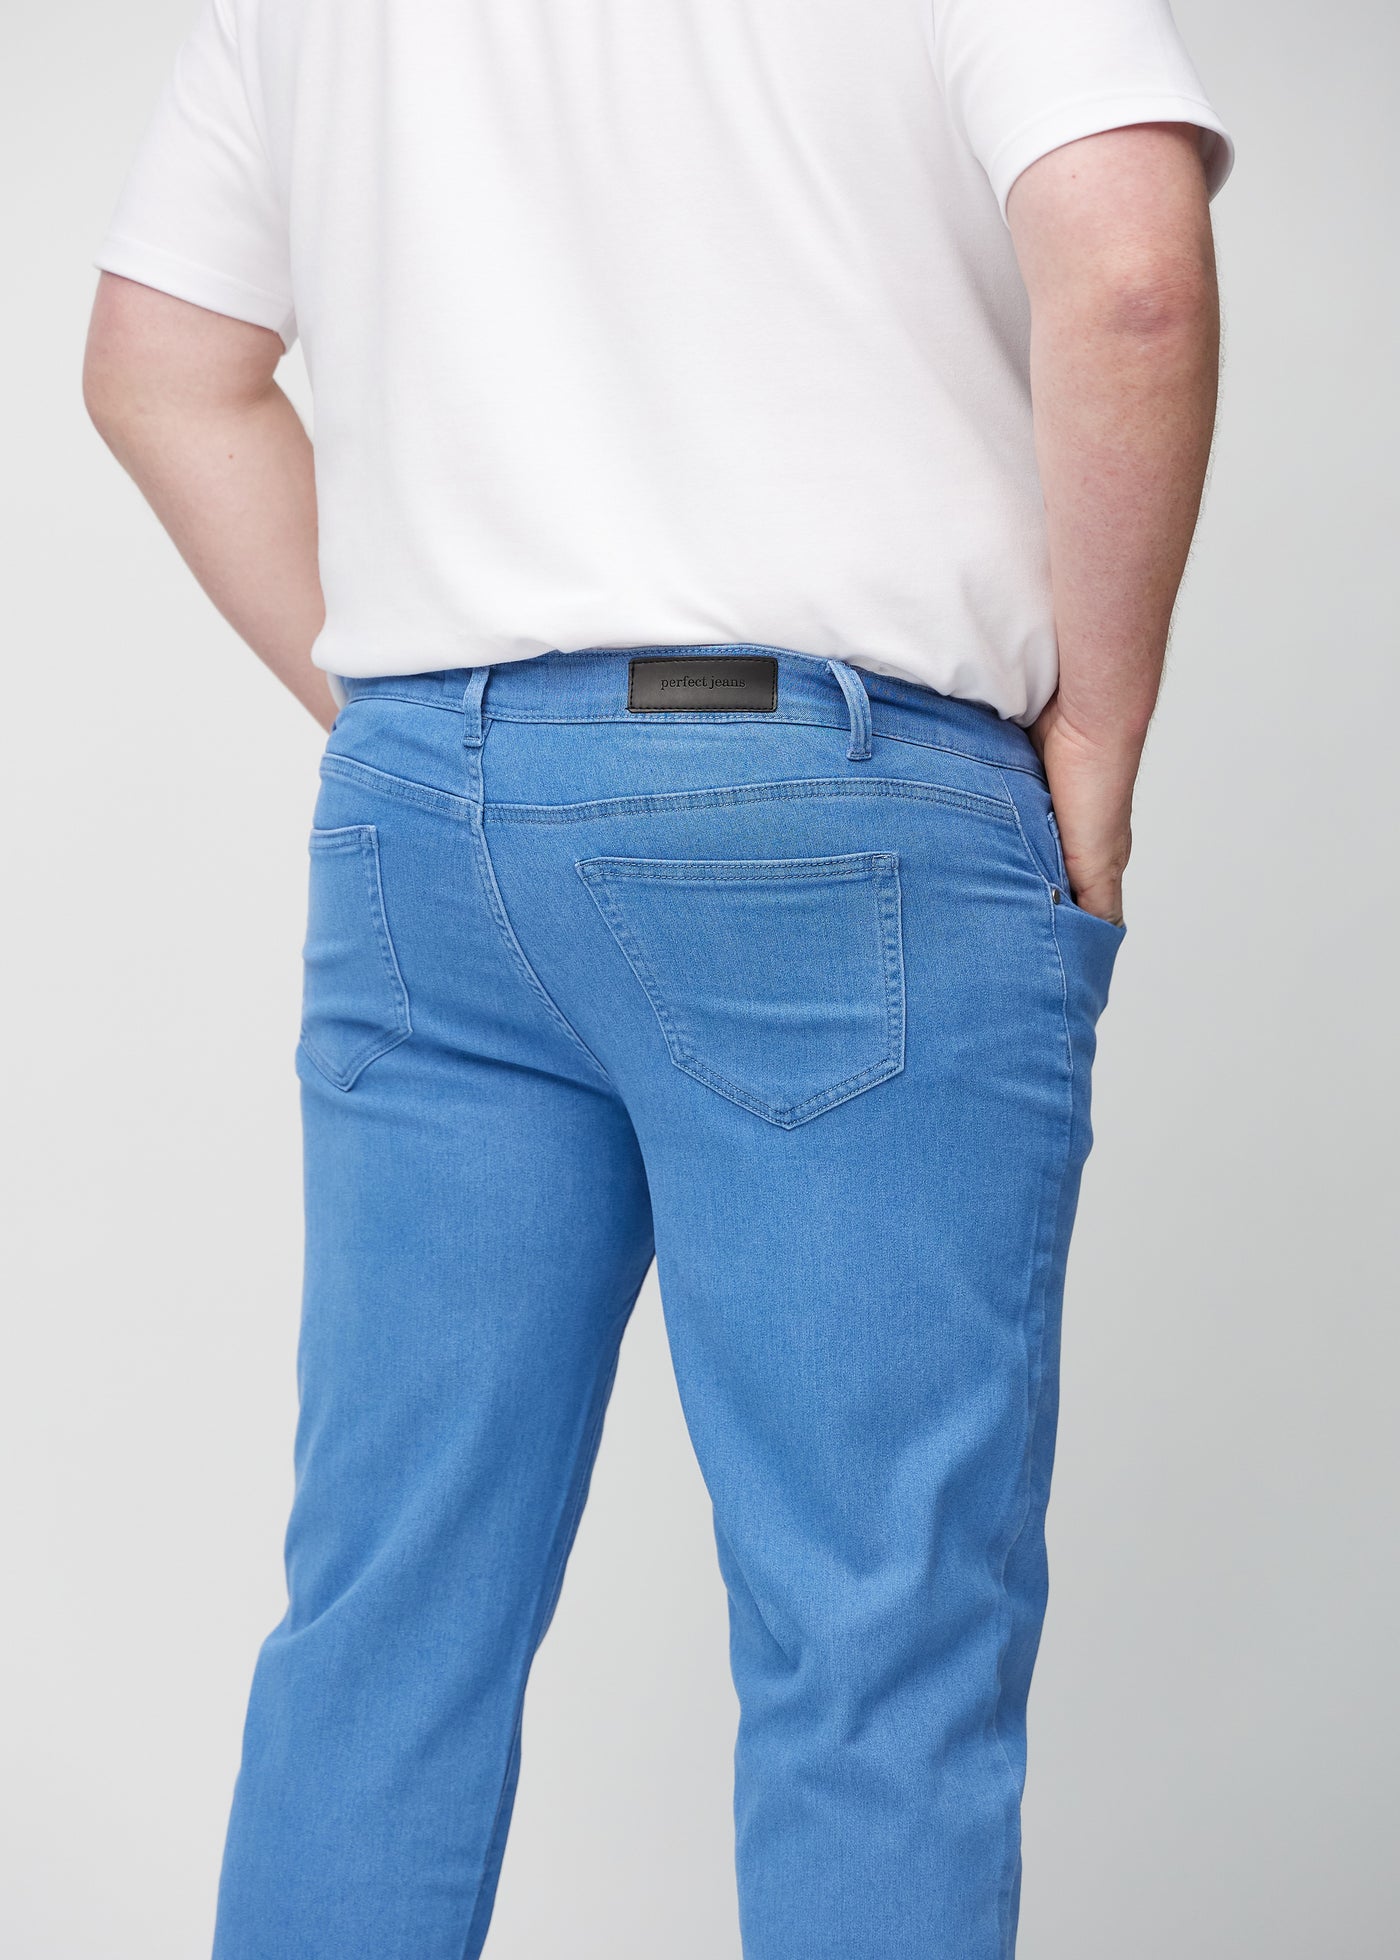 Perfect Jeans - Regular - Geraniums™